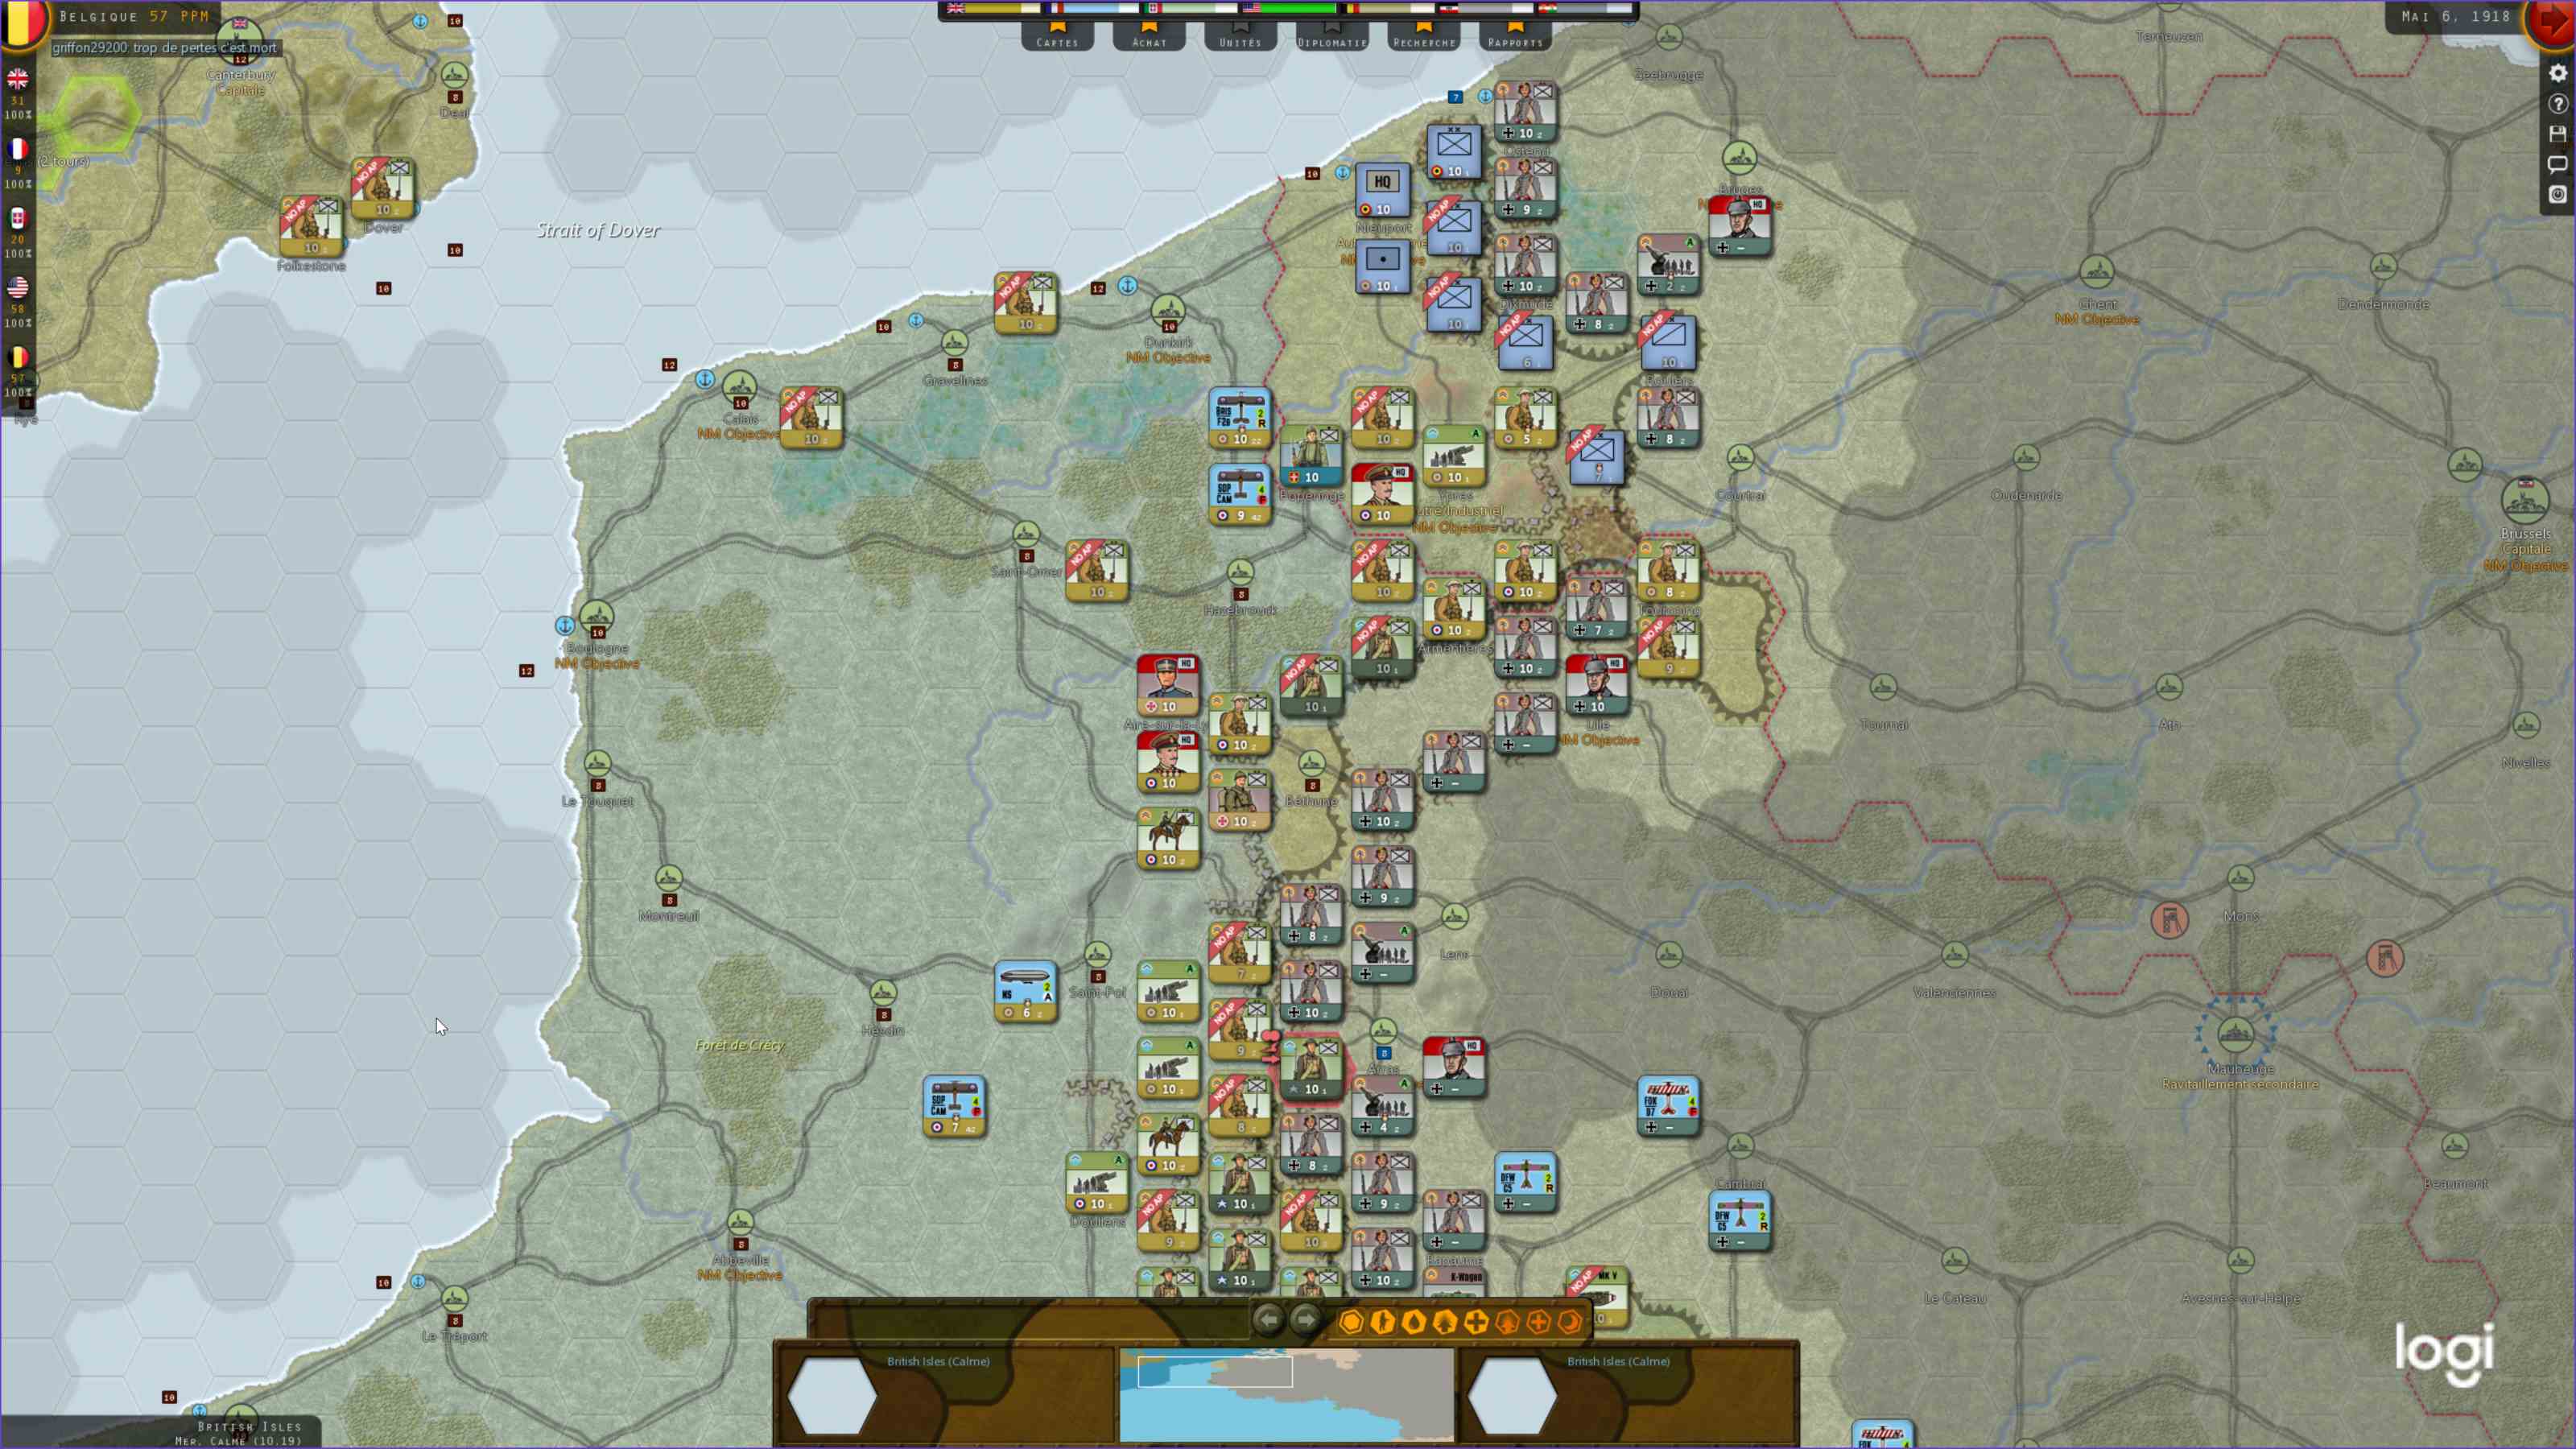 Percée en Belgique, les troupes US occupent le terrain.